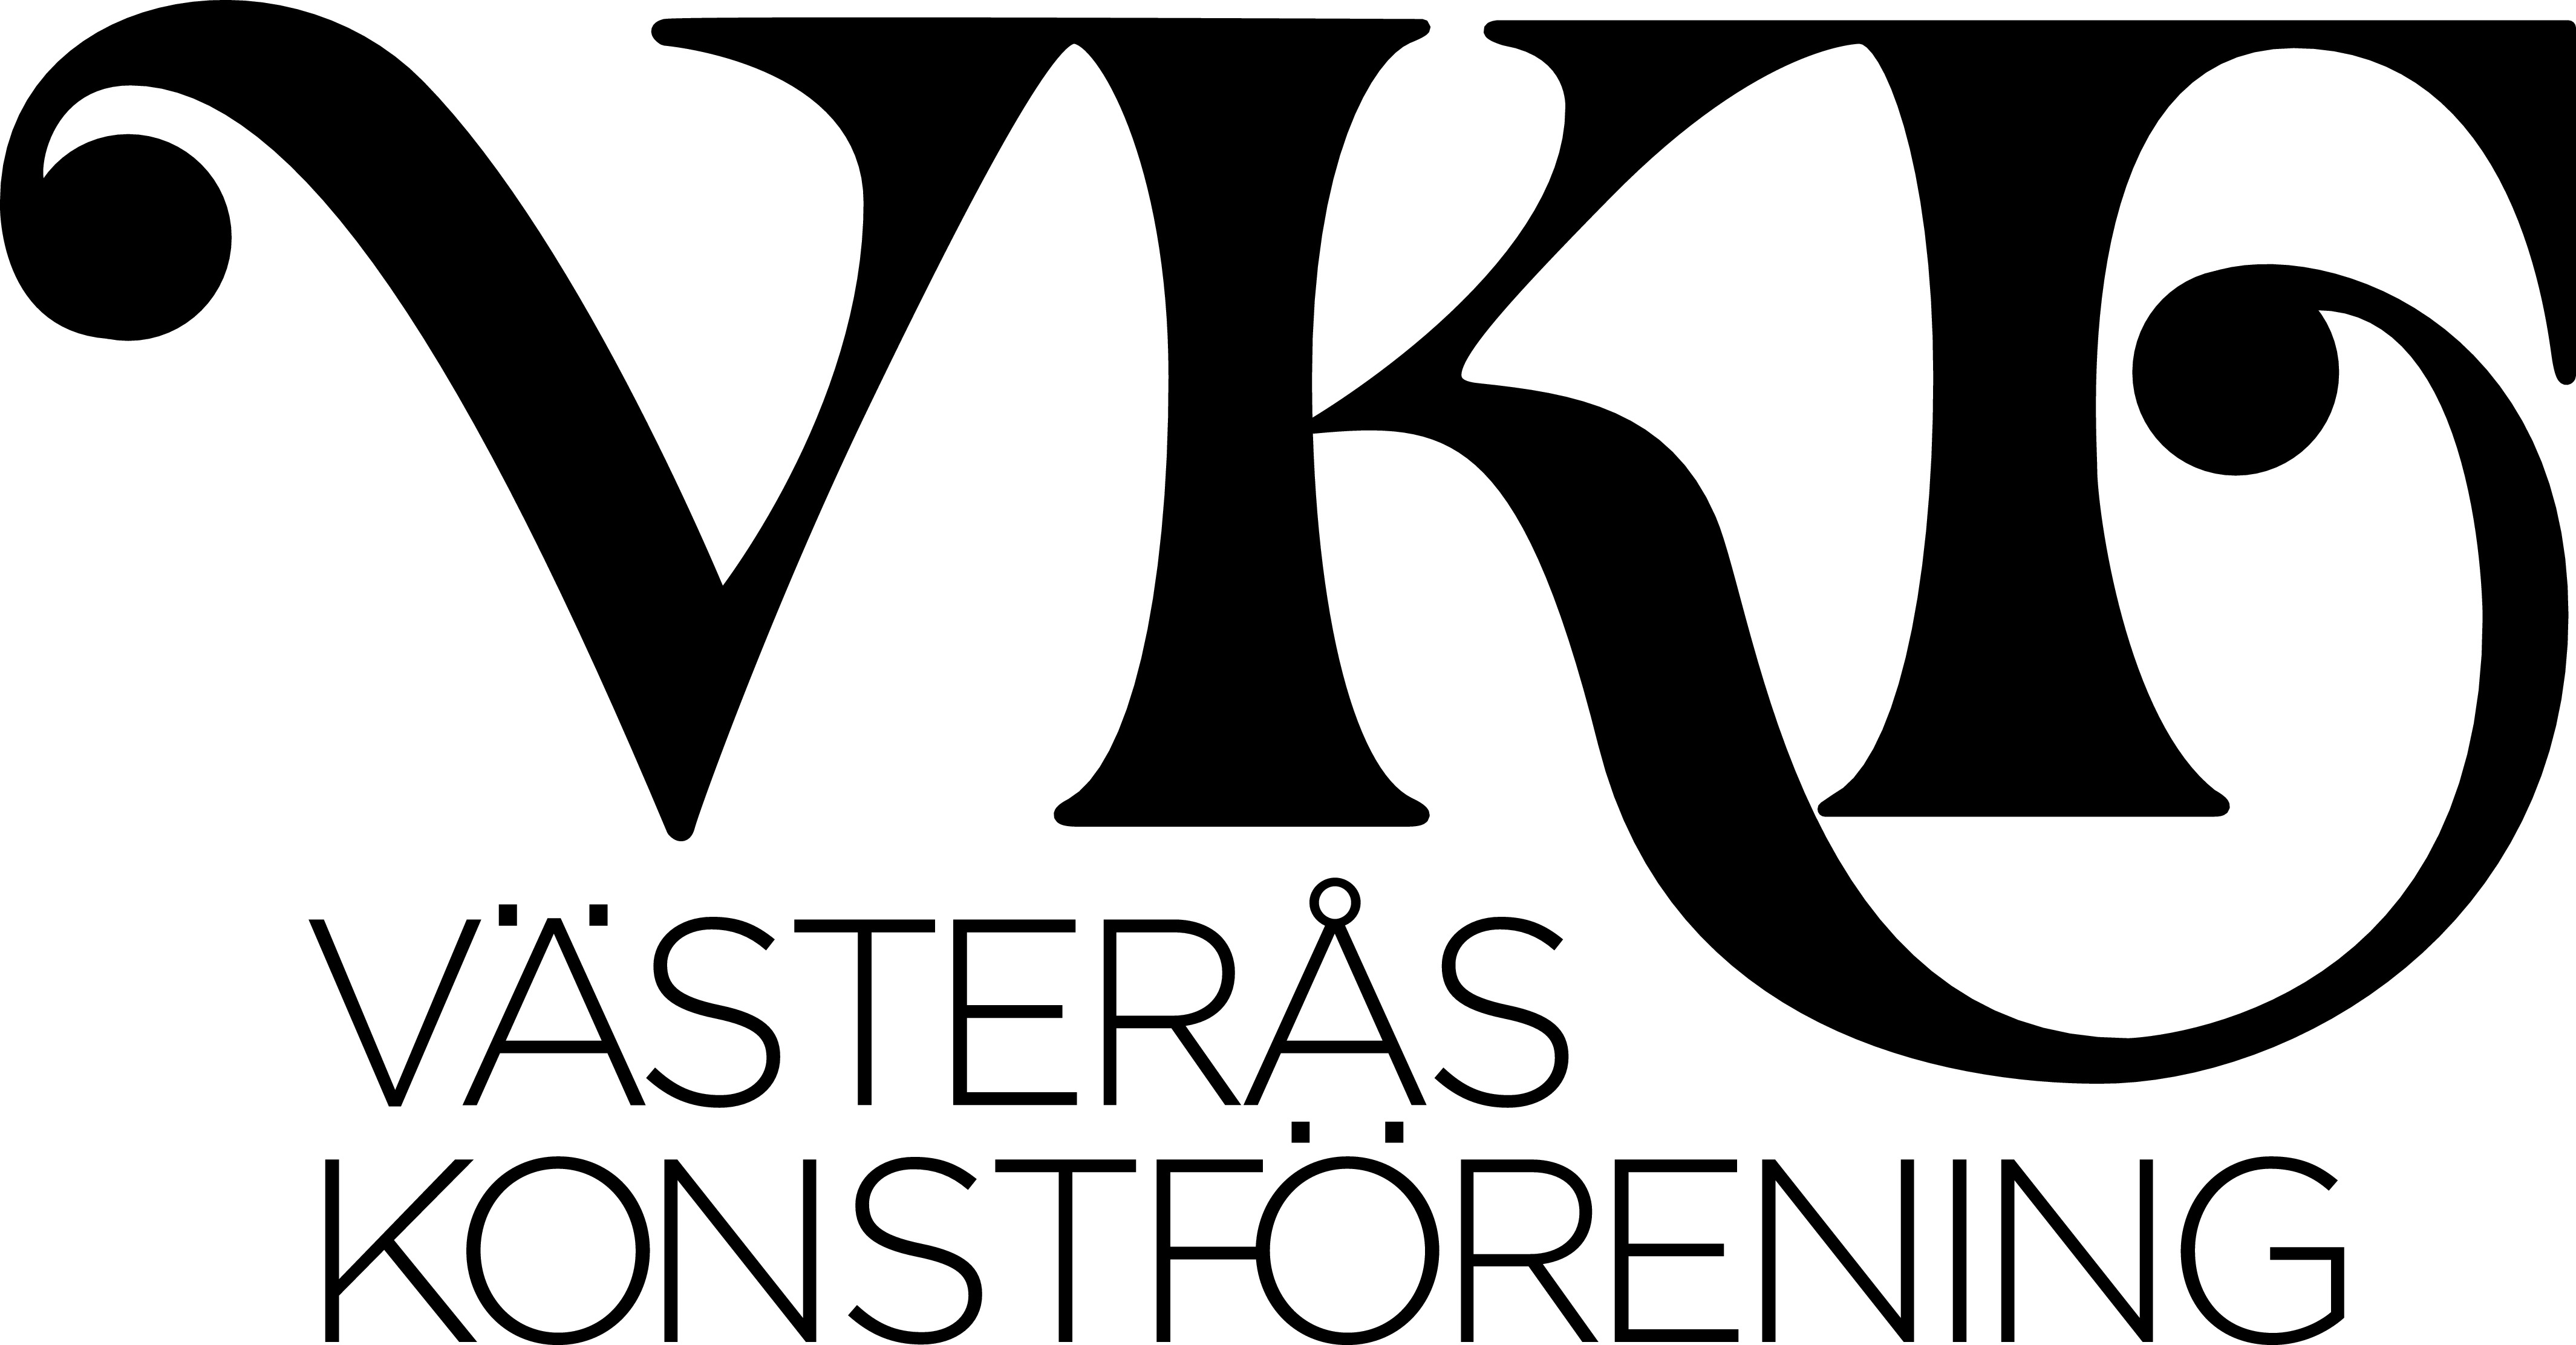 Västerås Konstförening